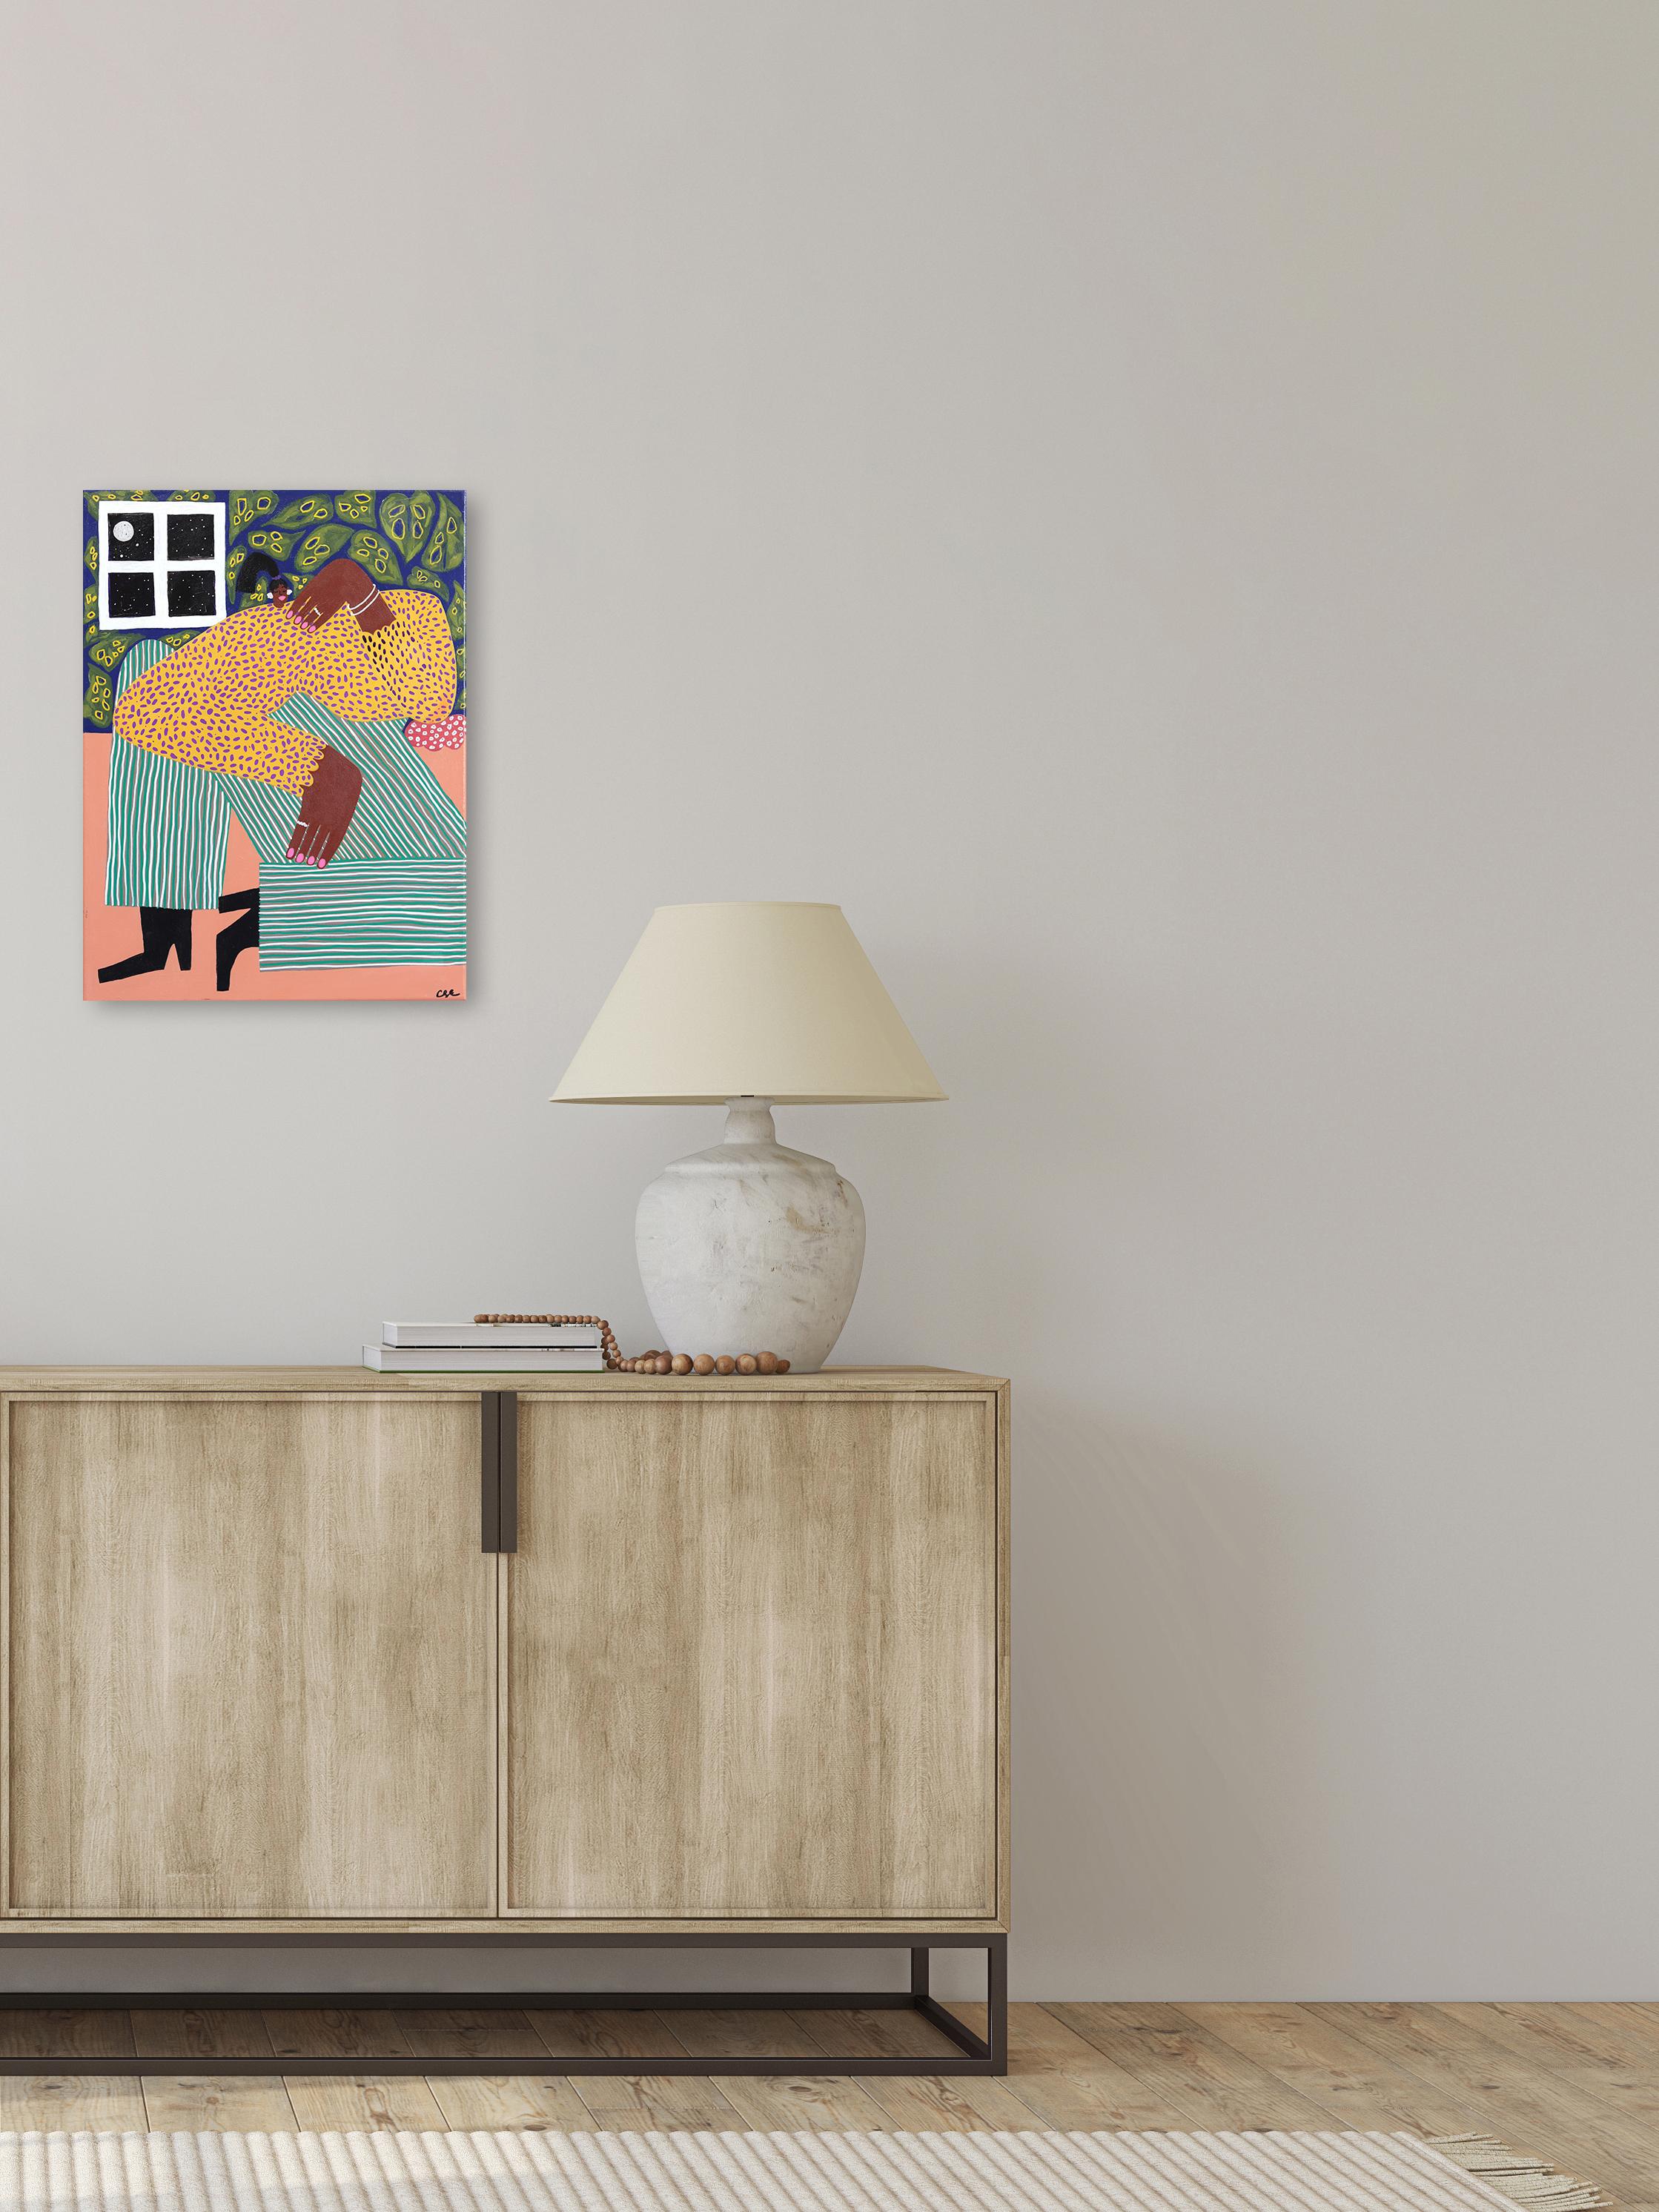 Just Got Home – fröhliches figuratives Gemälde (Zeitgenössisch), Mixed Media Art, von Courtney Simone